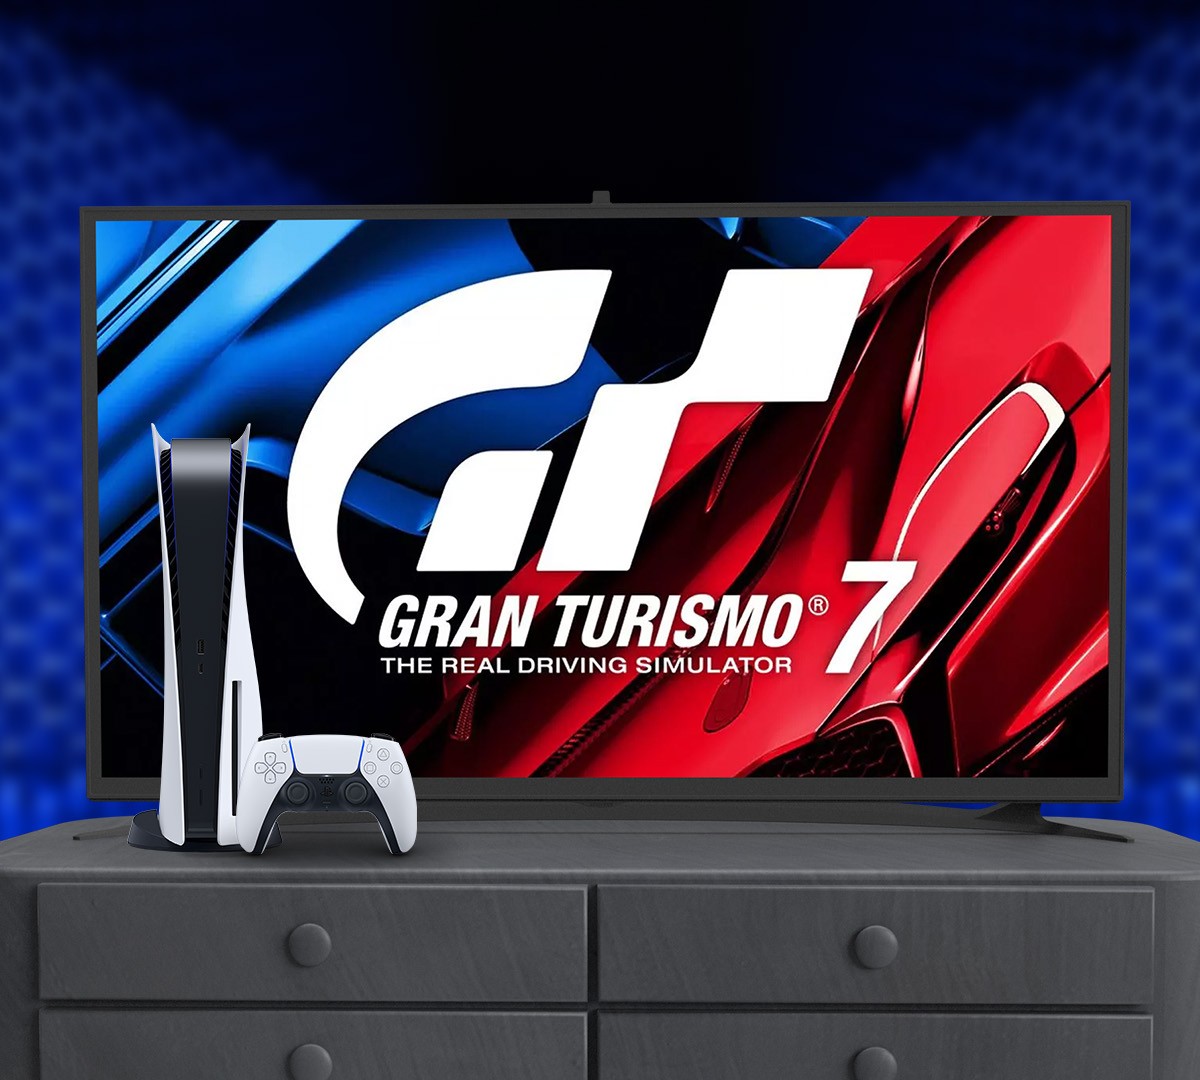 Jogo Gran Turismo 7 Edição Standard PS5 Polyphony Digital